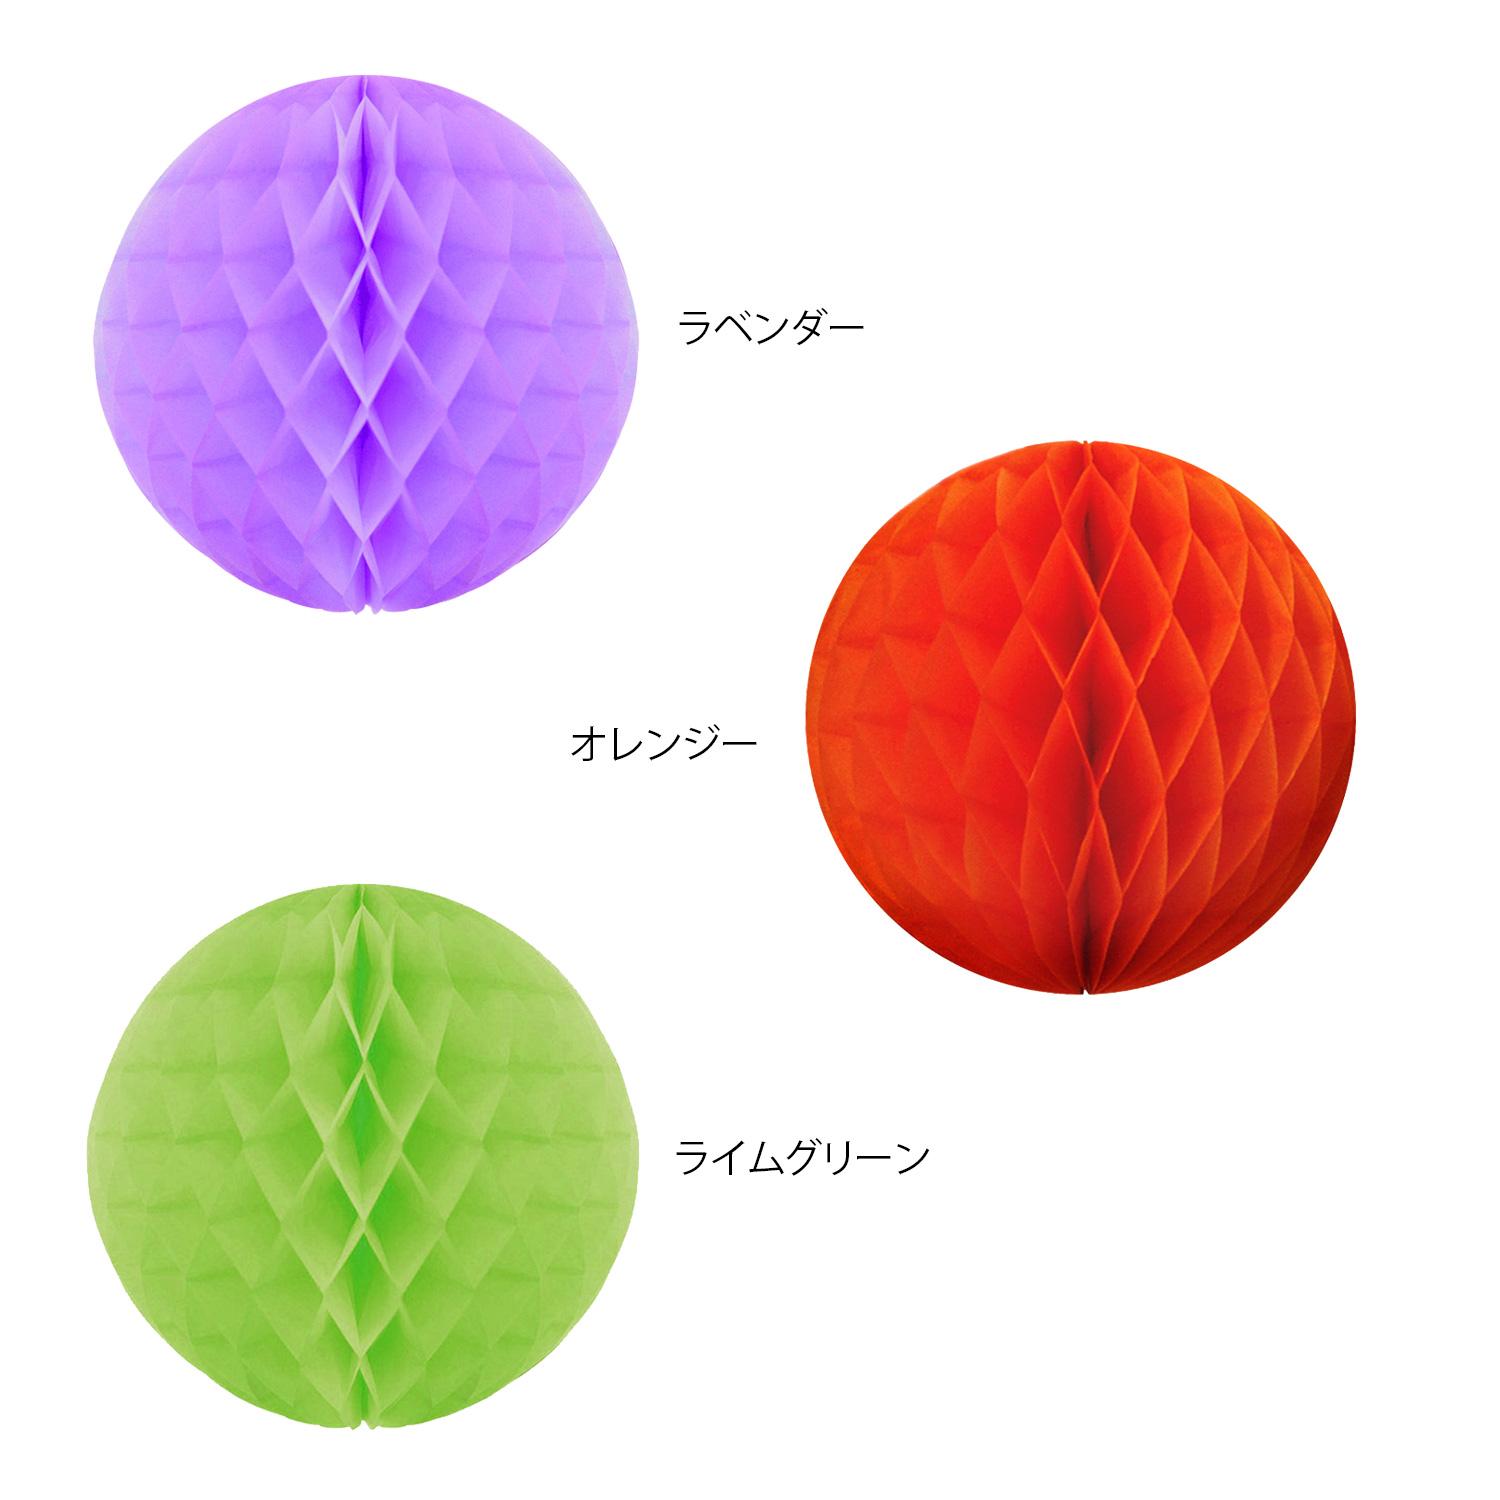 【送料無料】ハニカムボール 10cm ラベンダー オレンジ ライムグリーン (各2個入) 3色セット